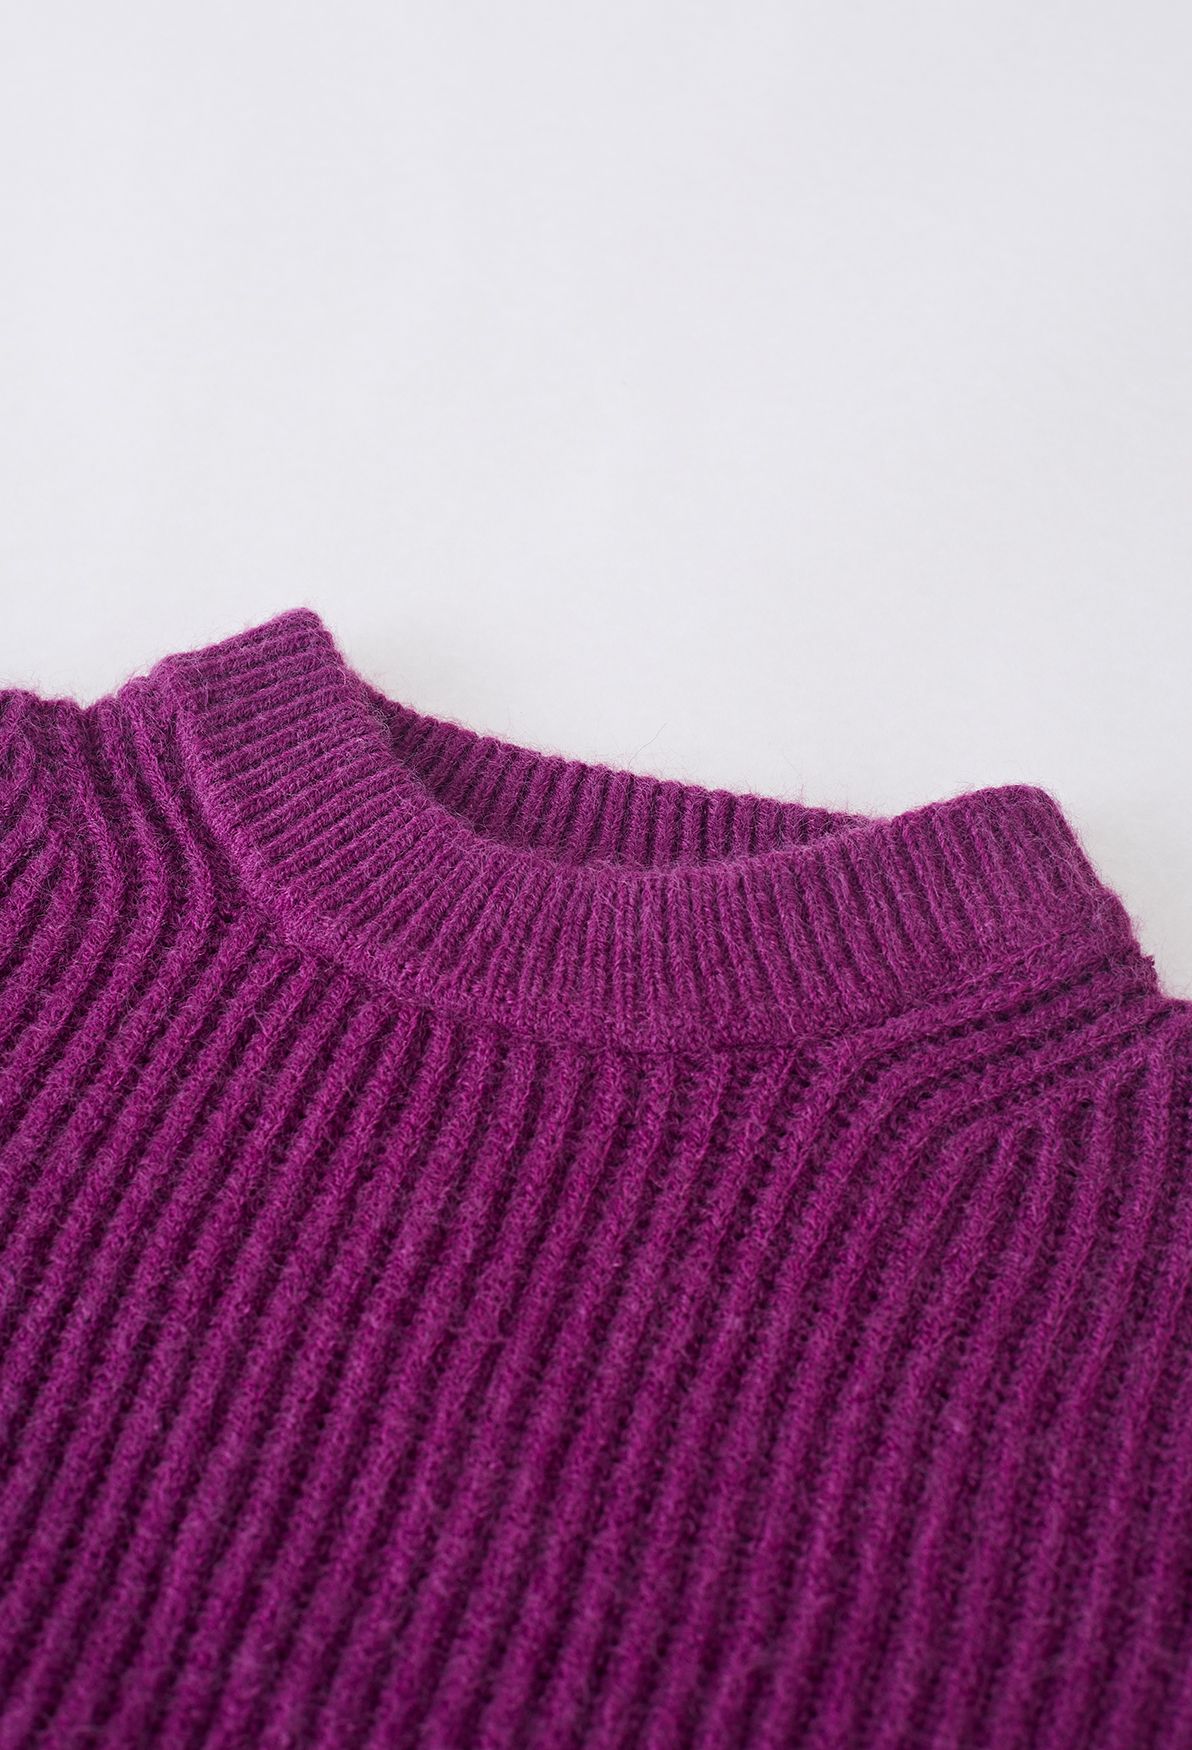 Pull en tricot côtelé de couleur unie en violet